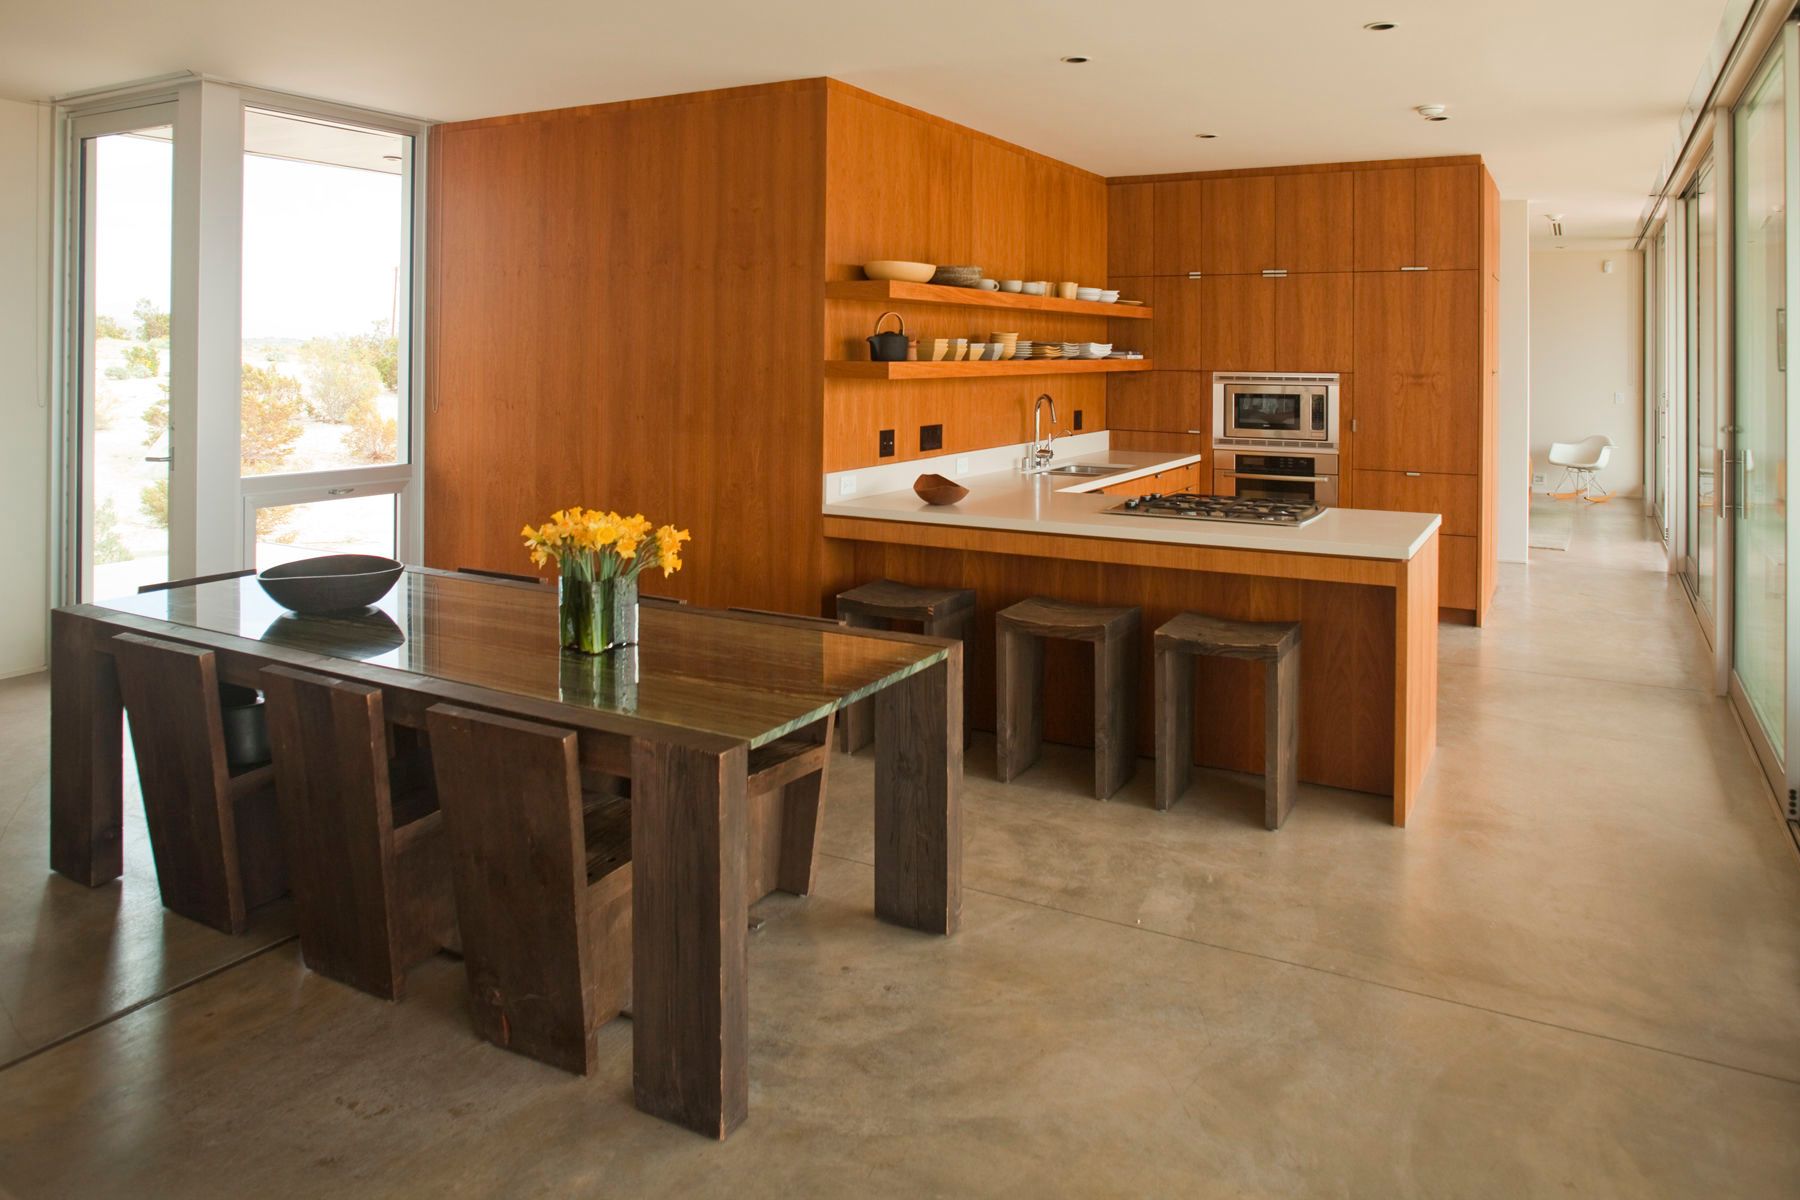 Marmol Radziner Desert House Kitchen